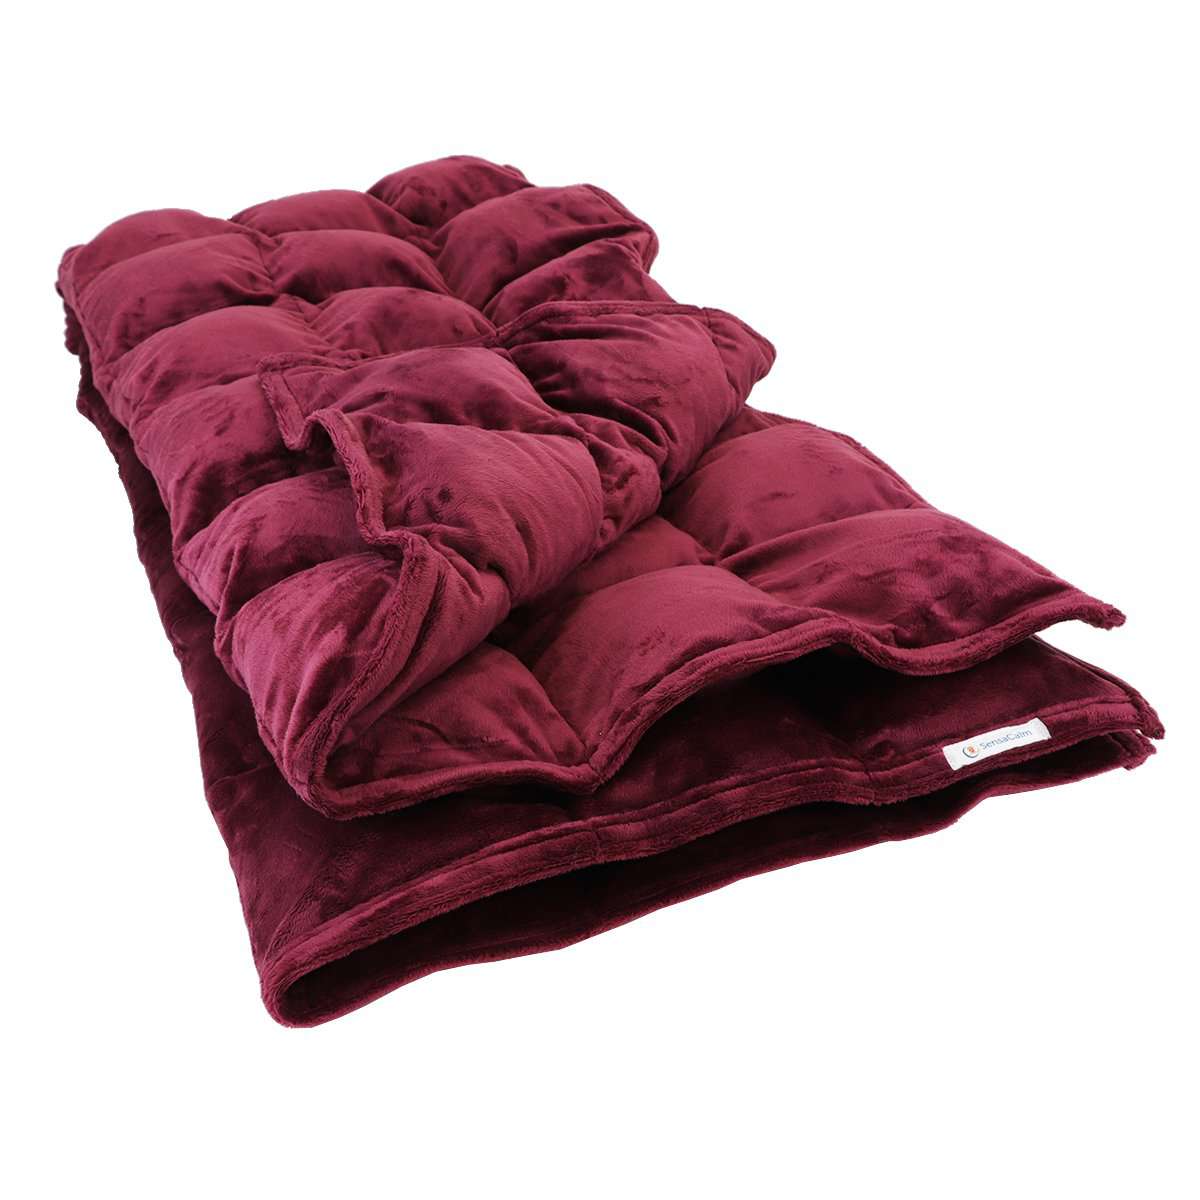 Cuddle Weighted Blanket - Merlot